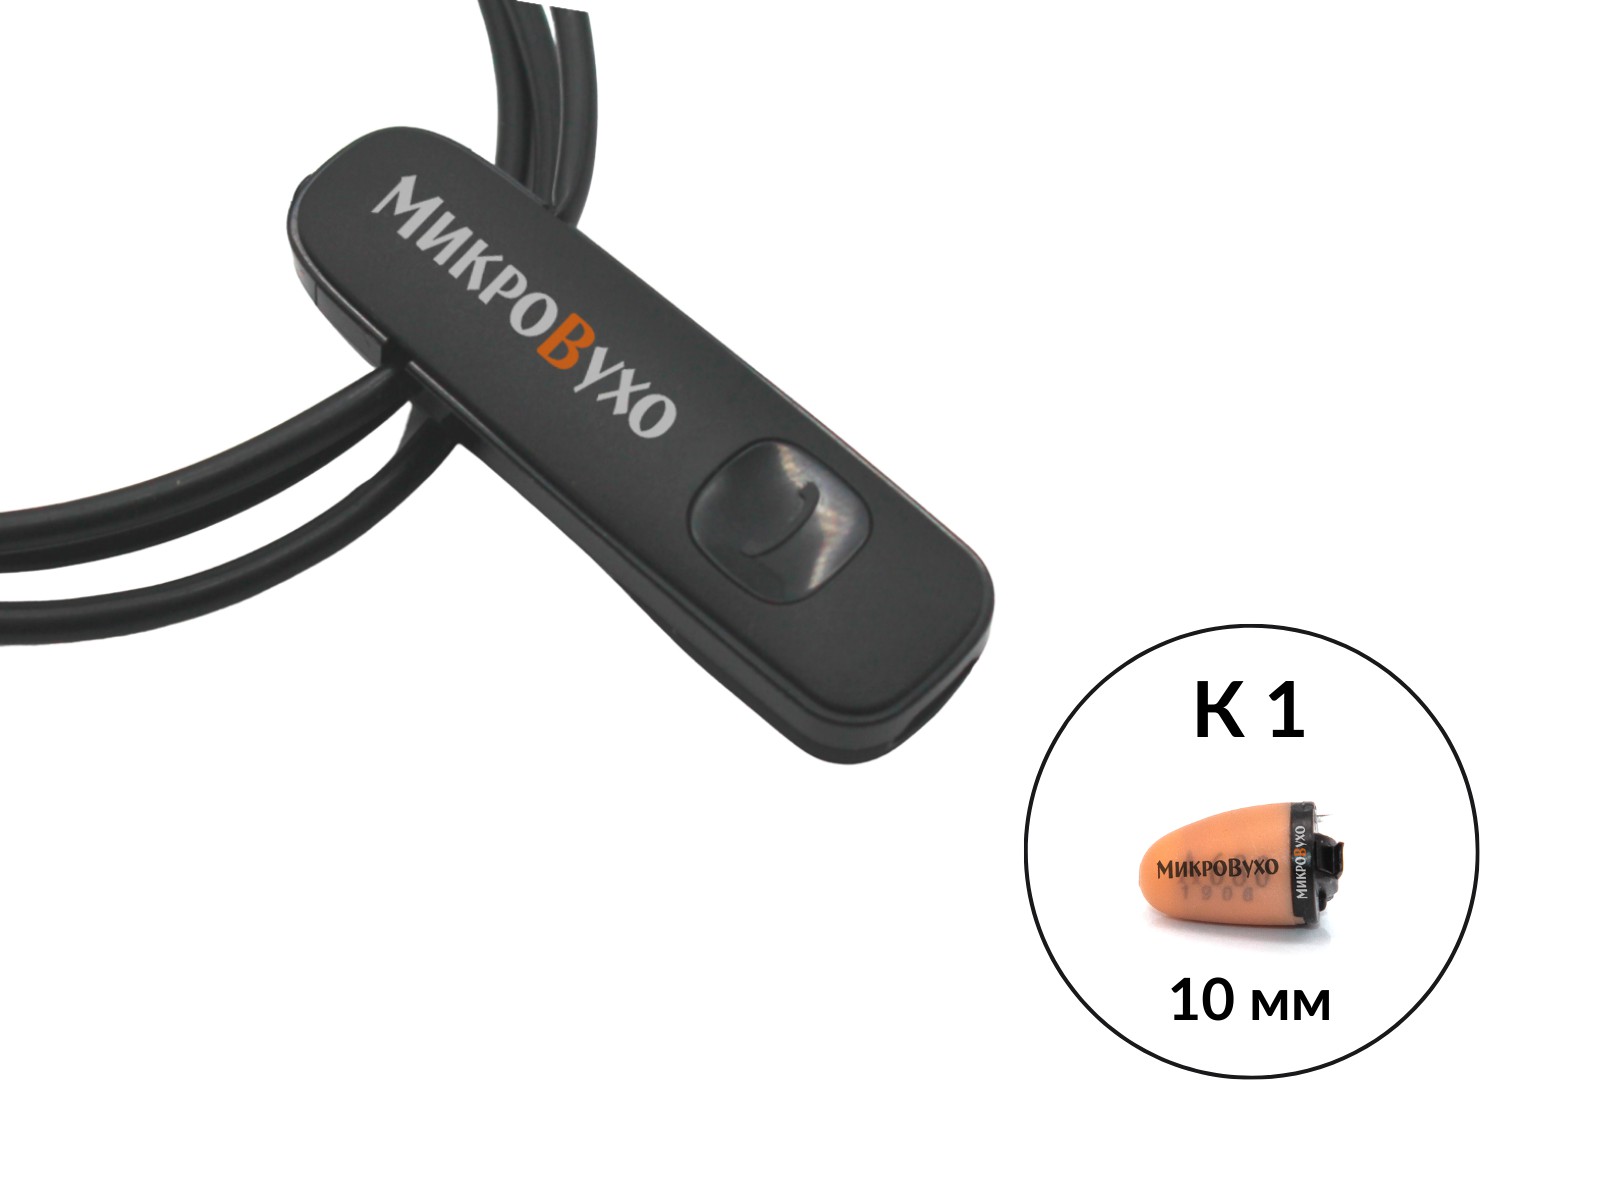 Гарнитура Bluetooth Plantronics с капсульным микронаушником K1 10 мм - изображение